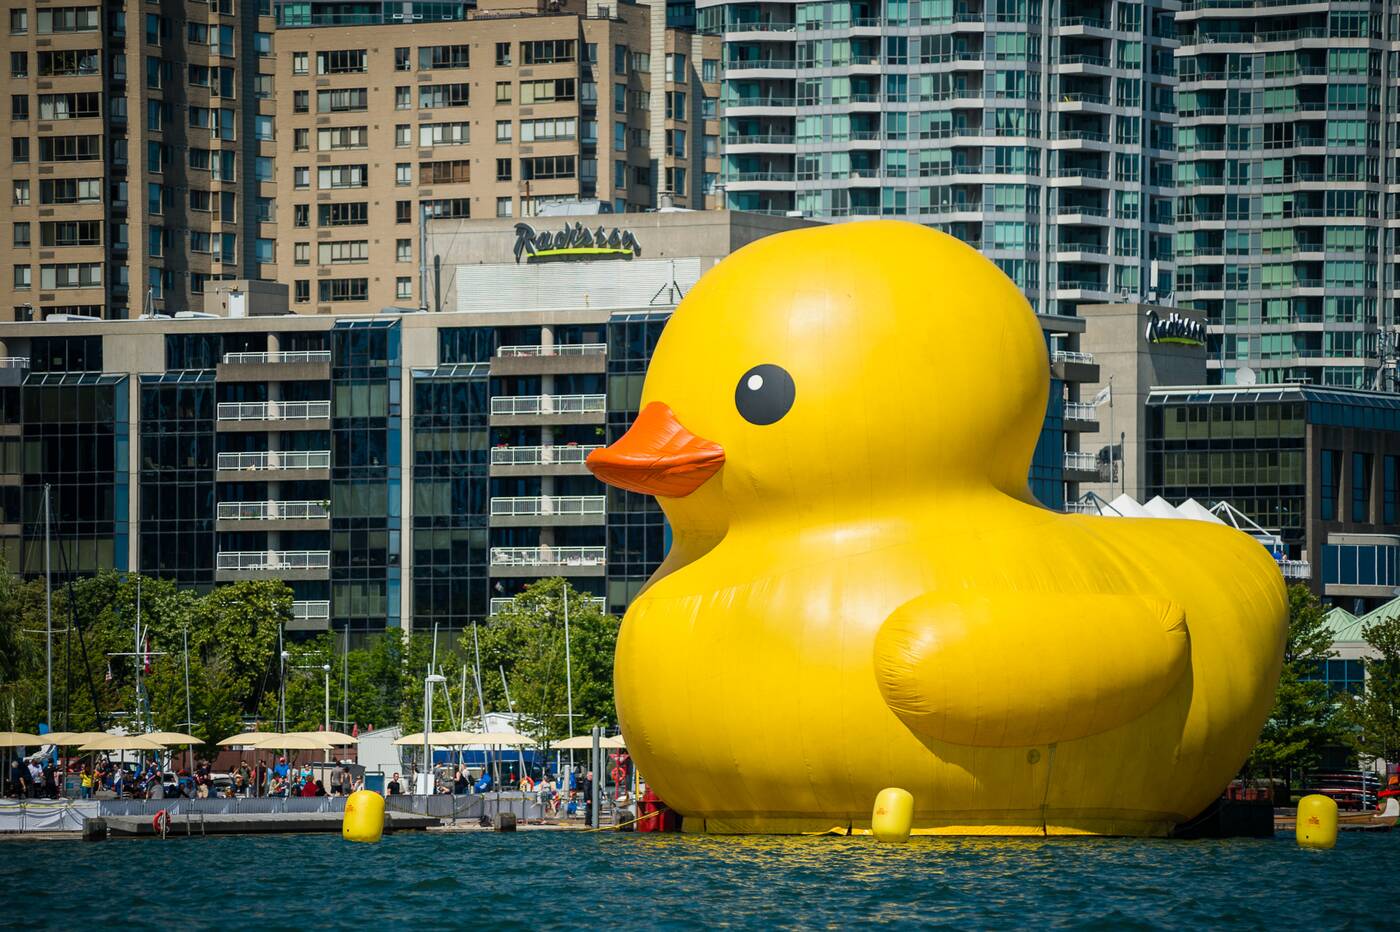 worlds biggest rubber duck